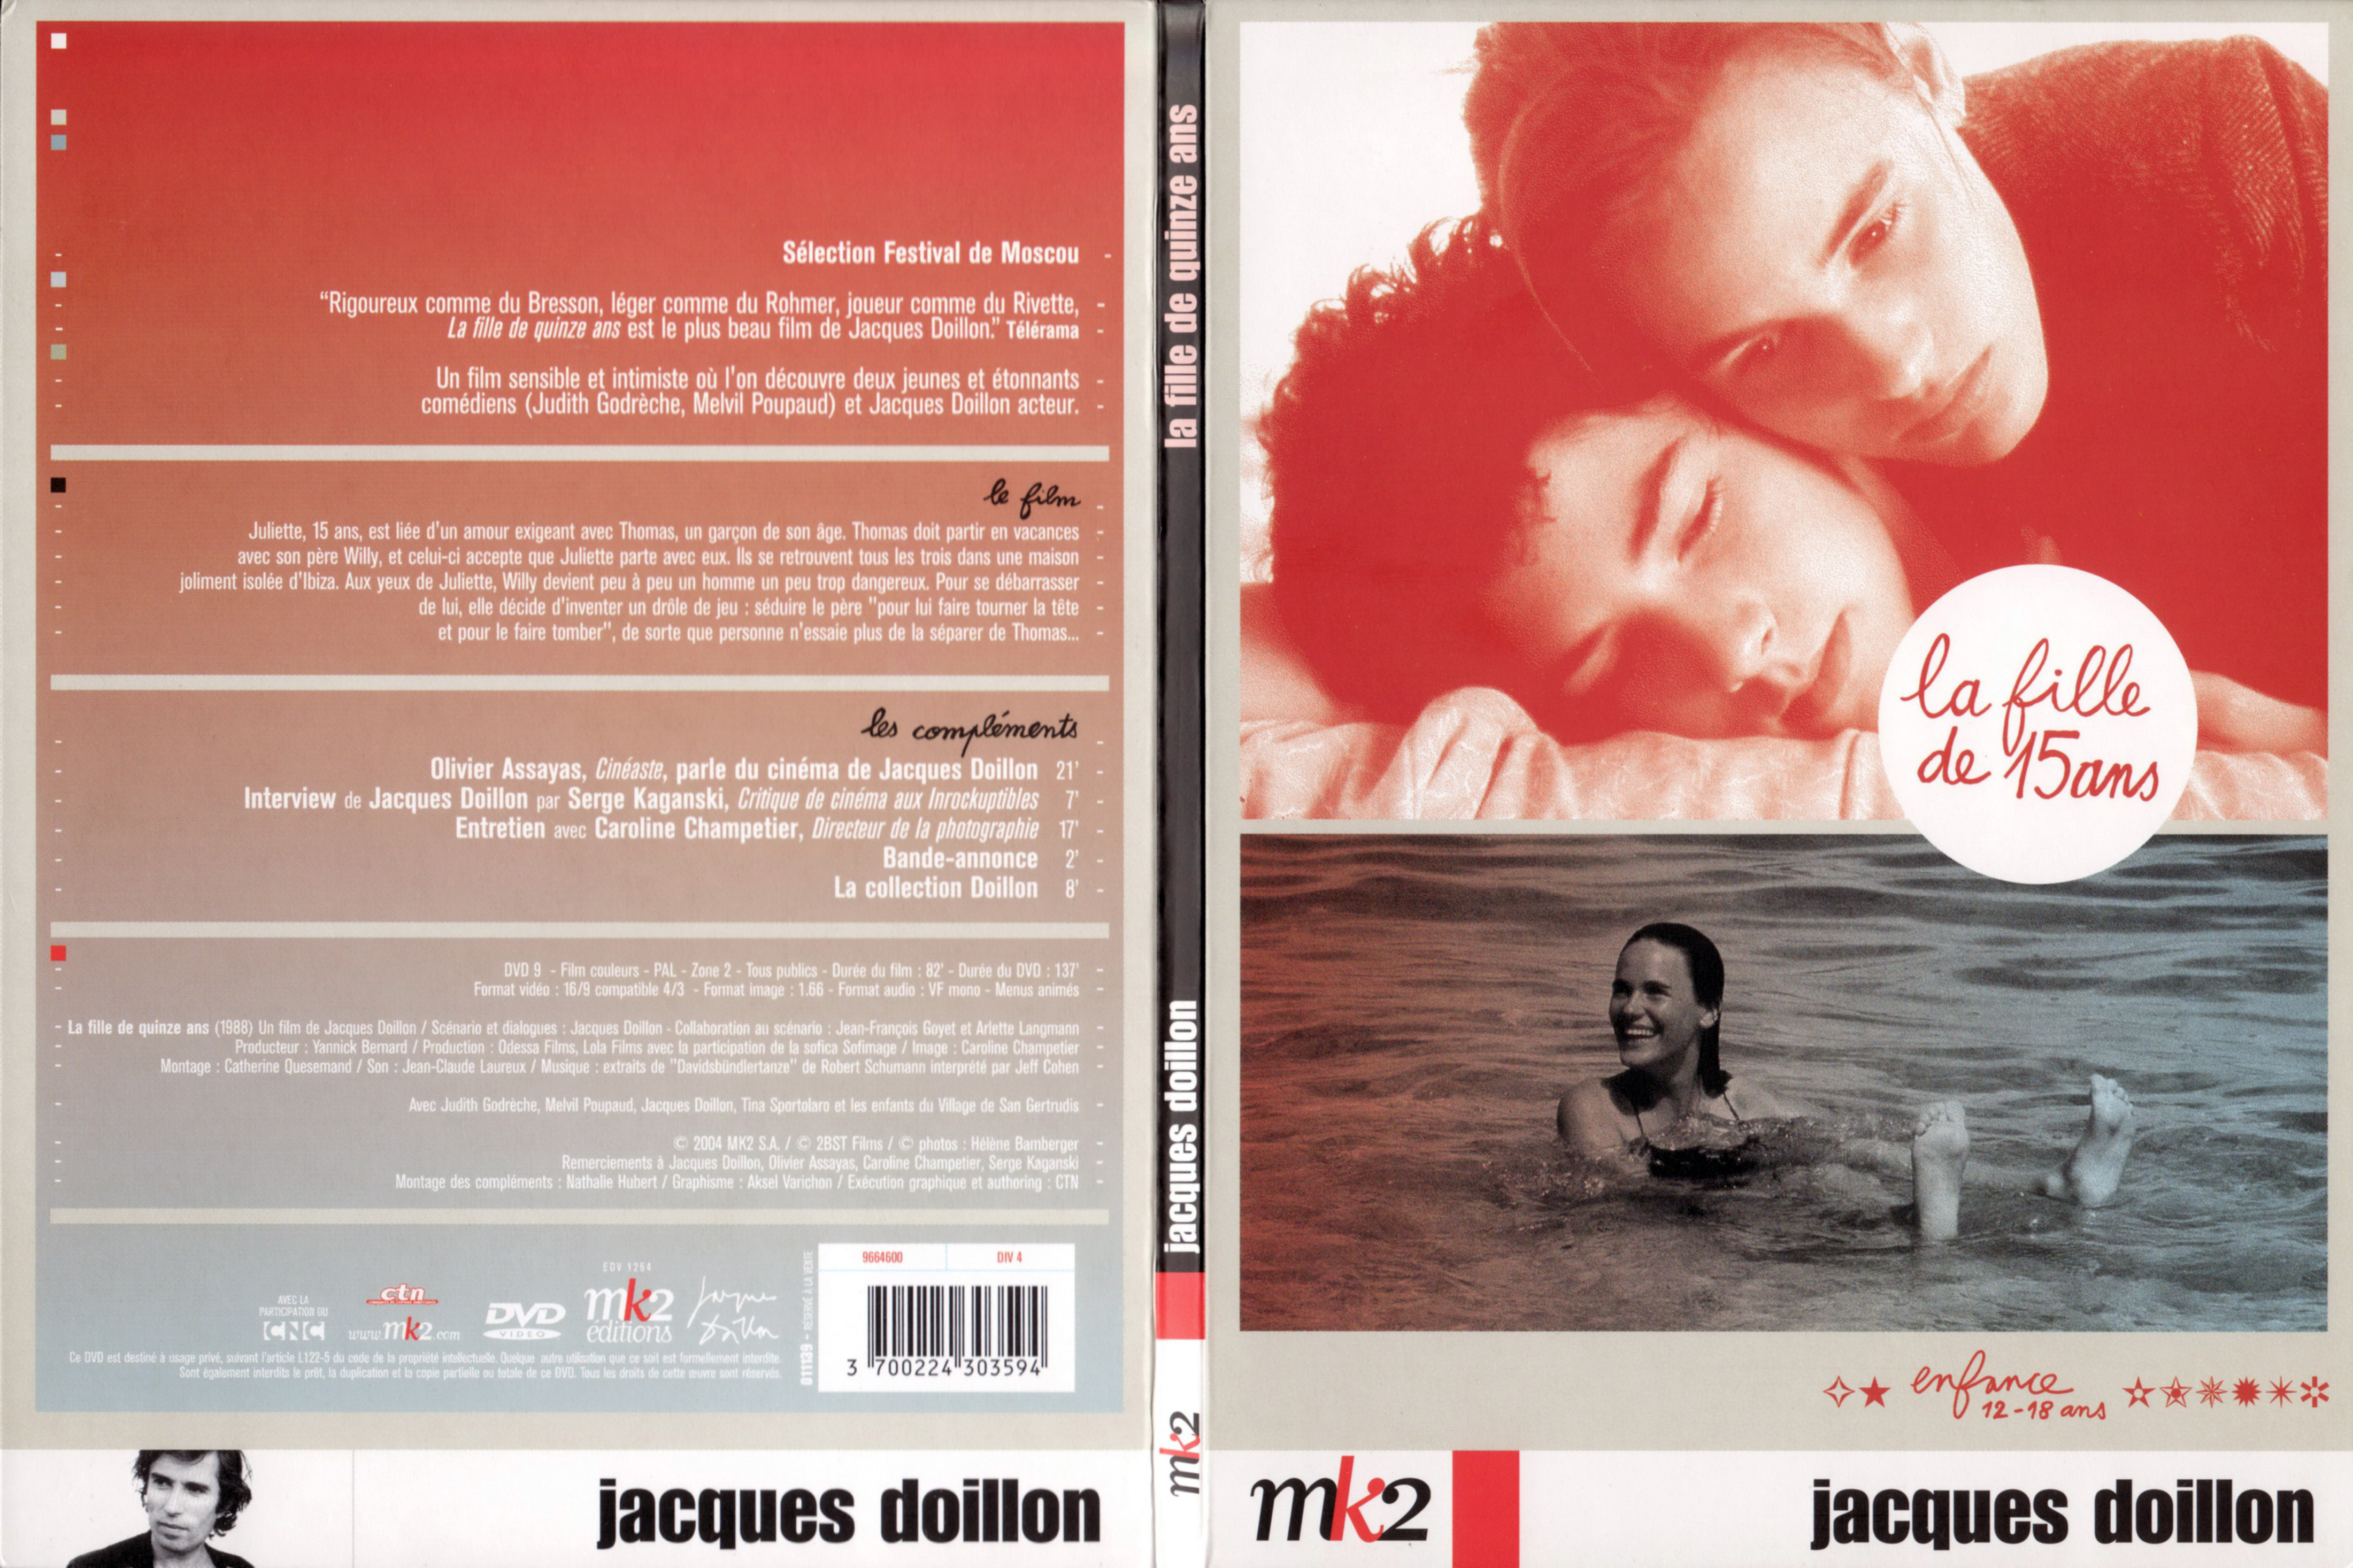 Jaquette DVD La fille de quinze ans